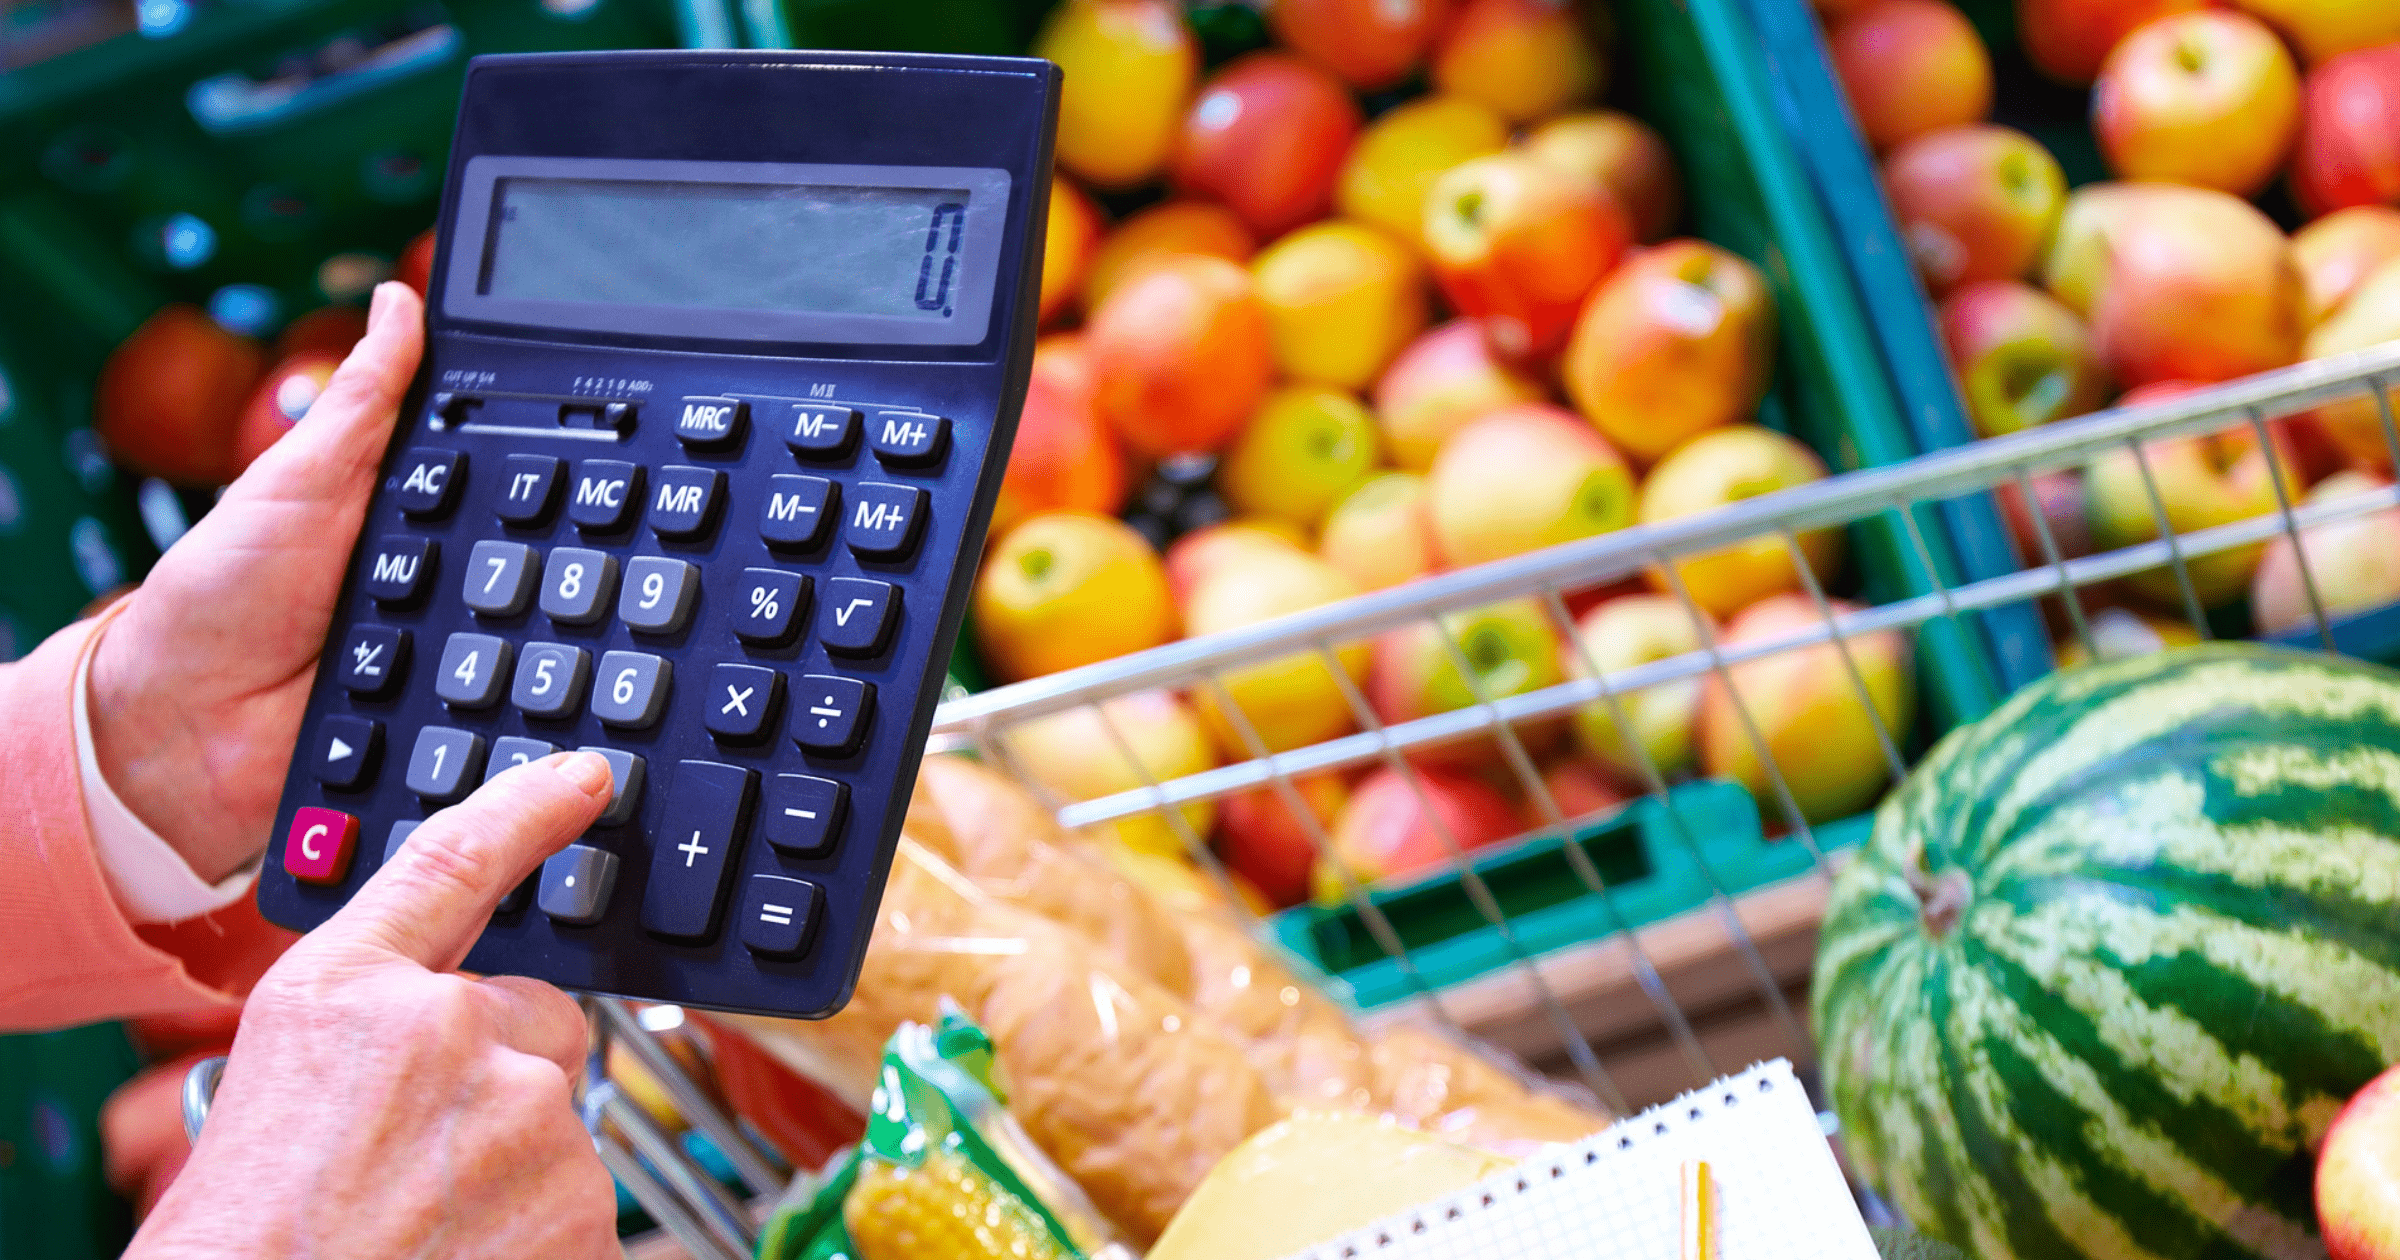 Инфляция в августе ускорилась и достигла 15.4% — Нацбанк изображение публикации